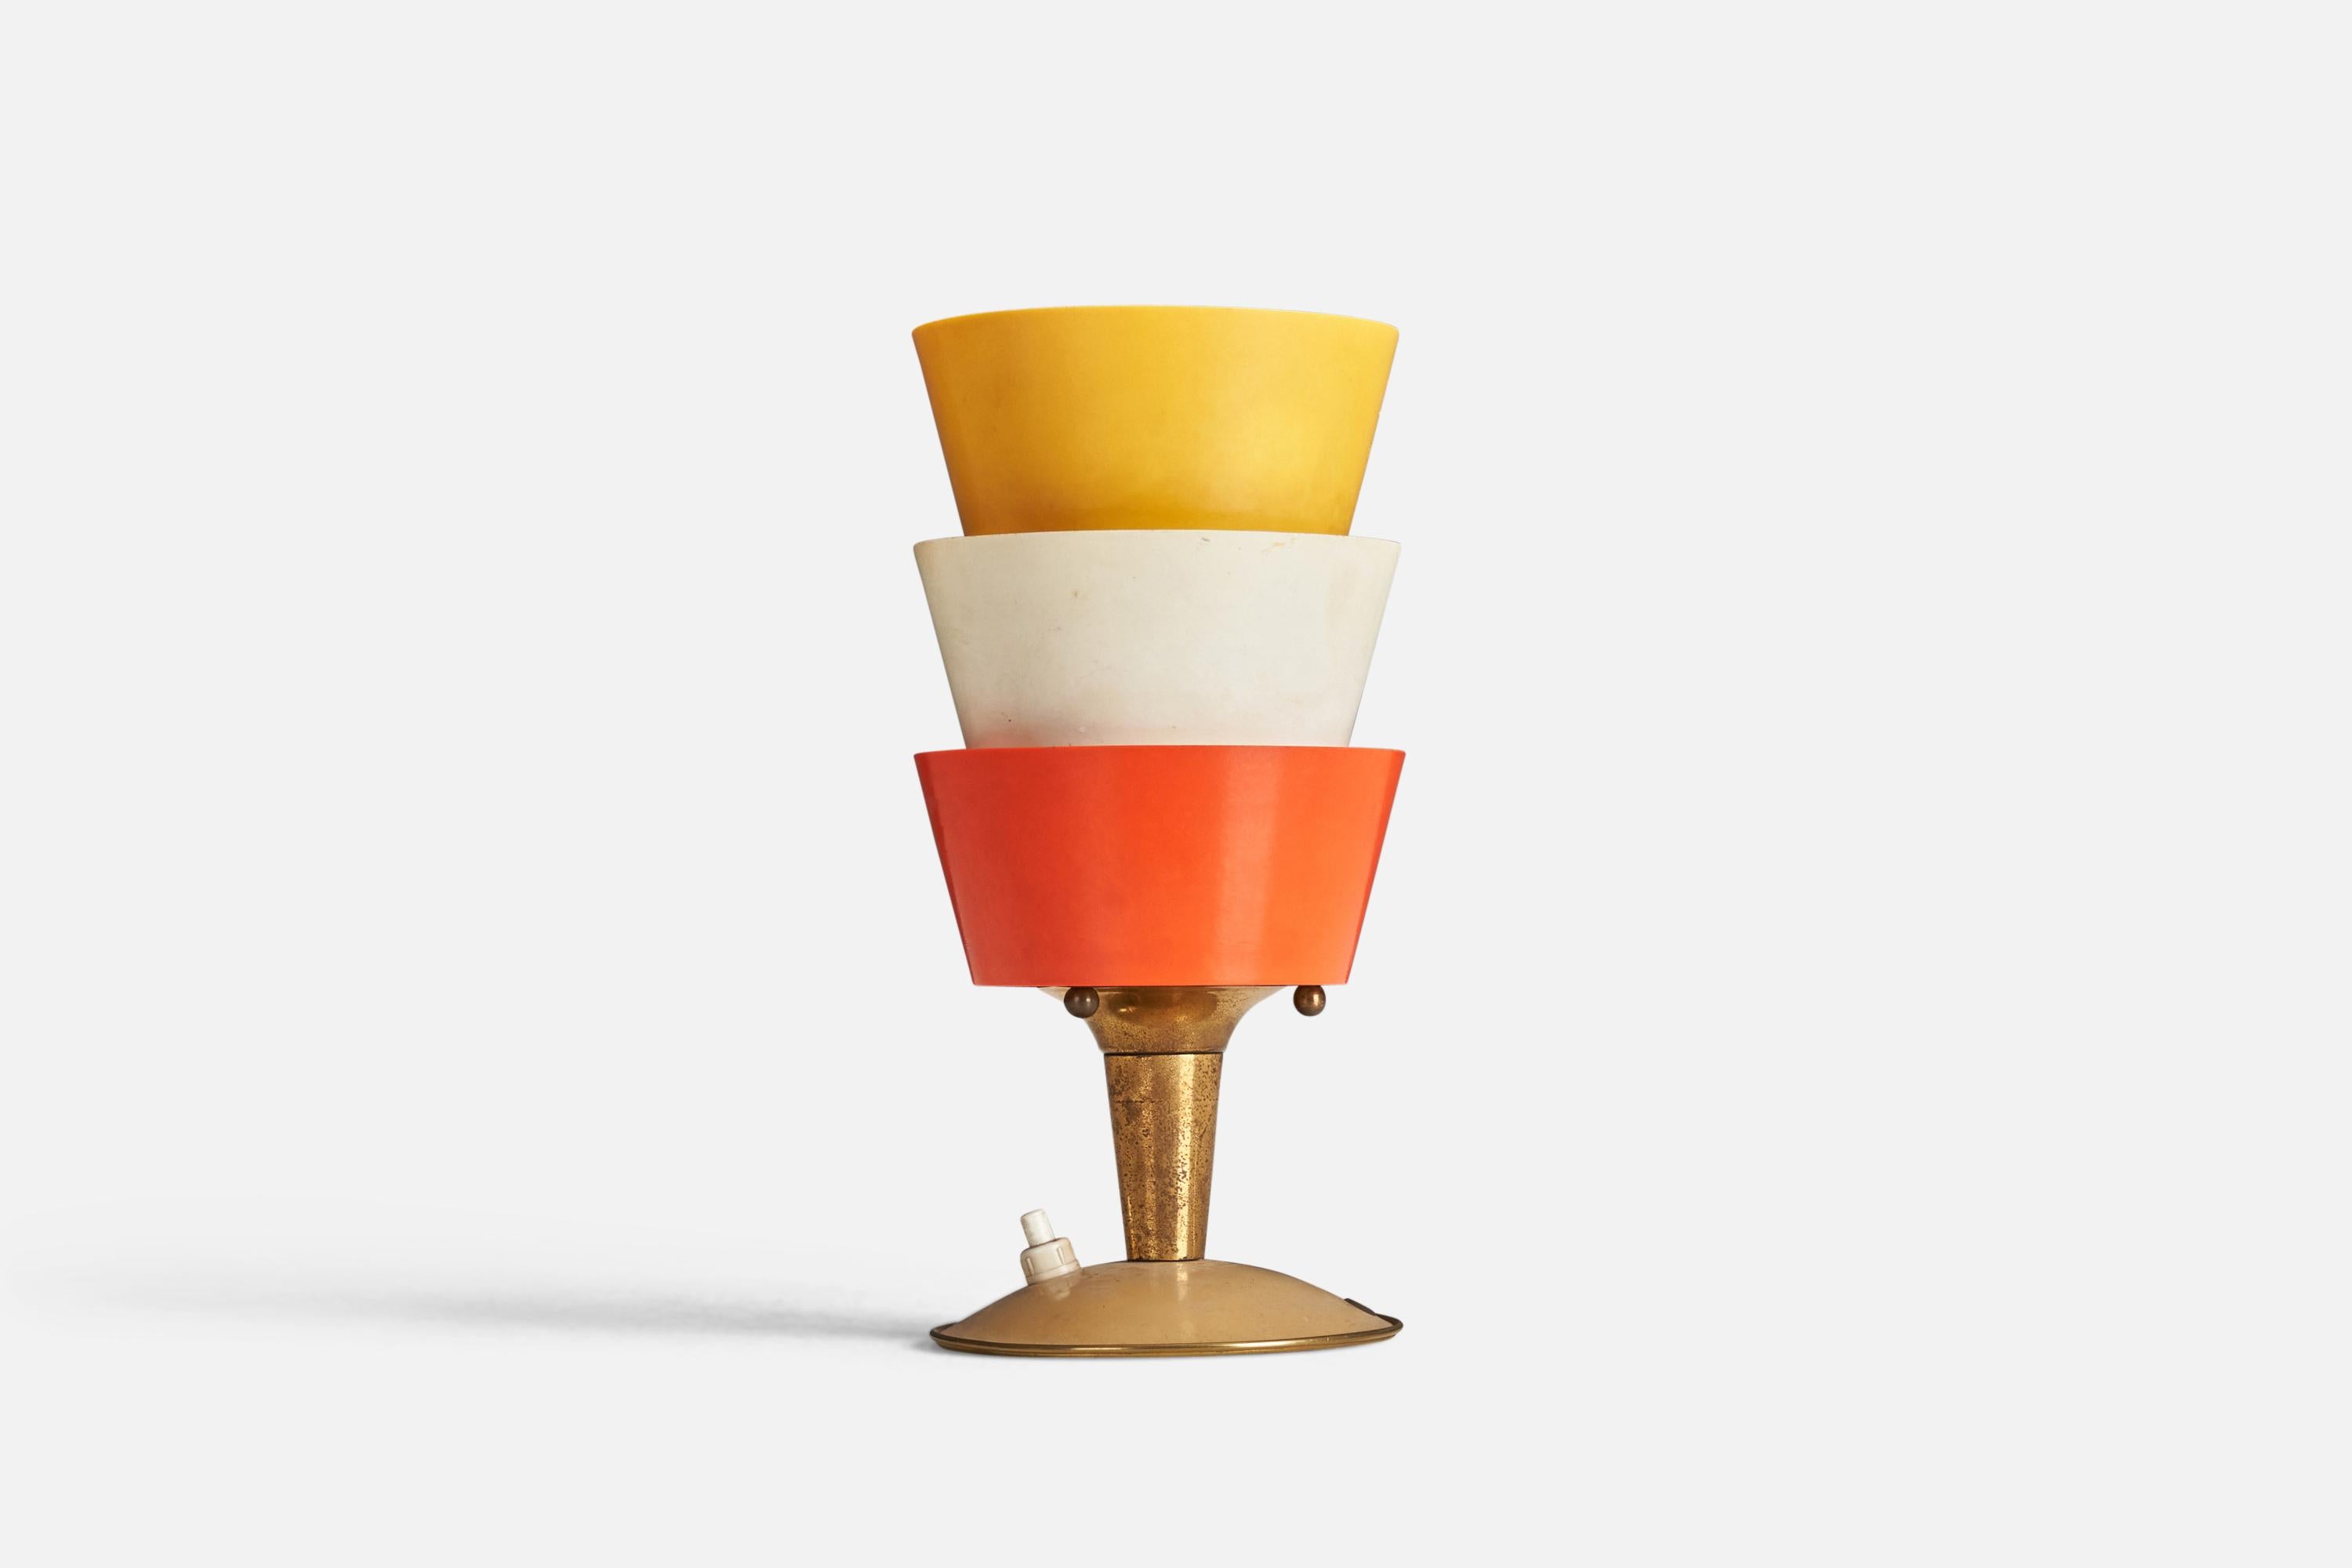 Paire de lampes de table en laiton et en acrylique rouge, blanc et jaune, conçues et produites par un designer italien, Italie, années 1950.

Les douilles acceptent les ampoules E-14.

Il n'y a pas de puissance maximale indiquée sur les luminaires.